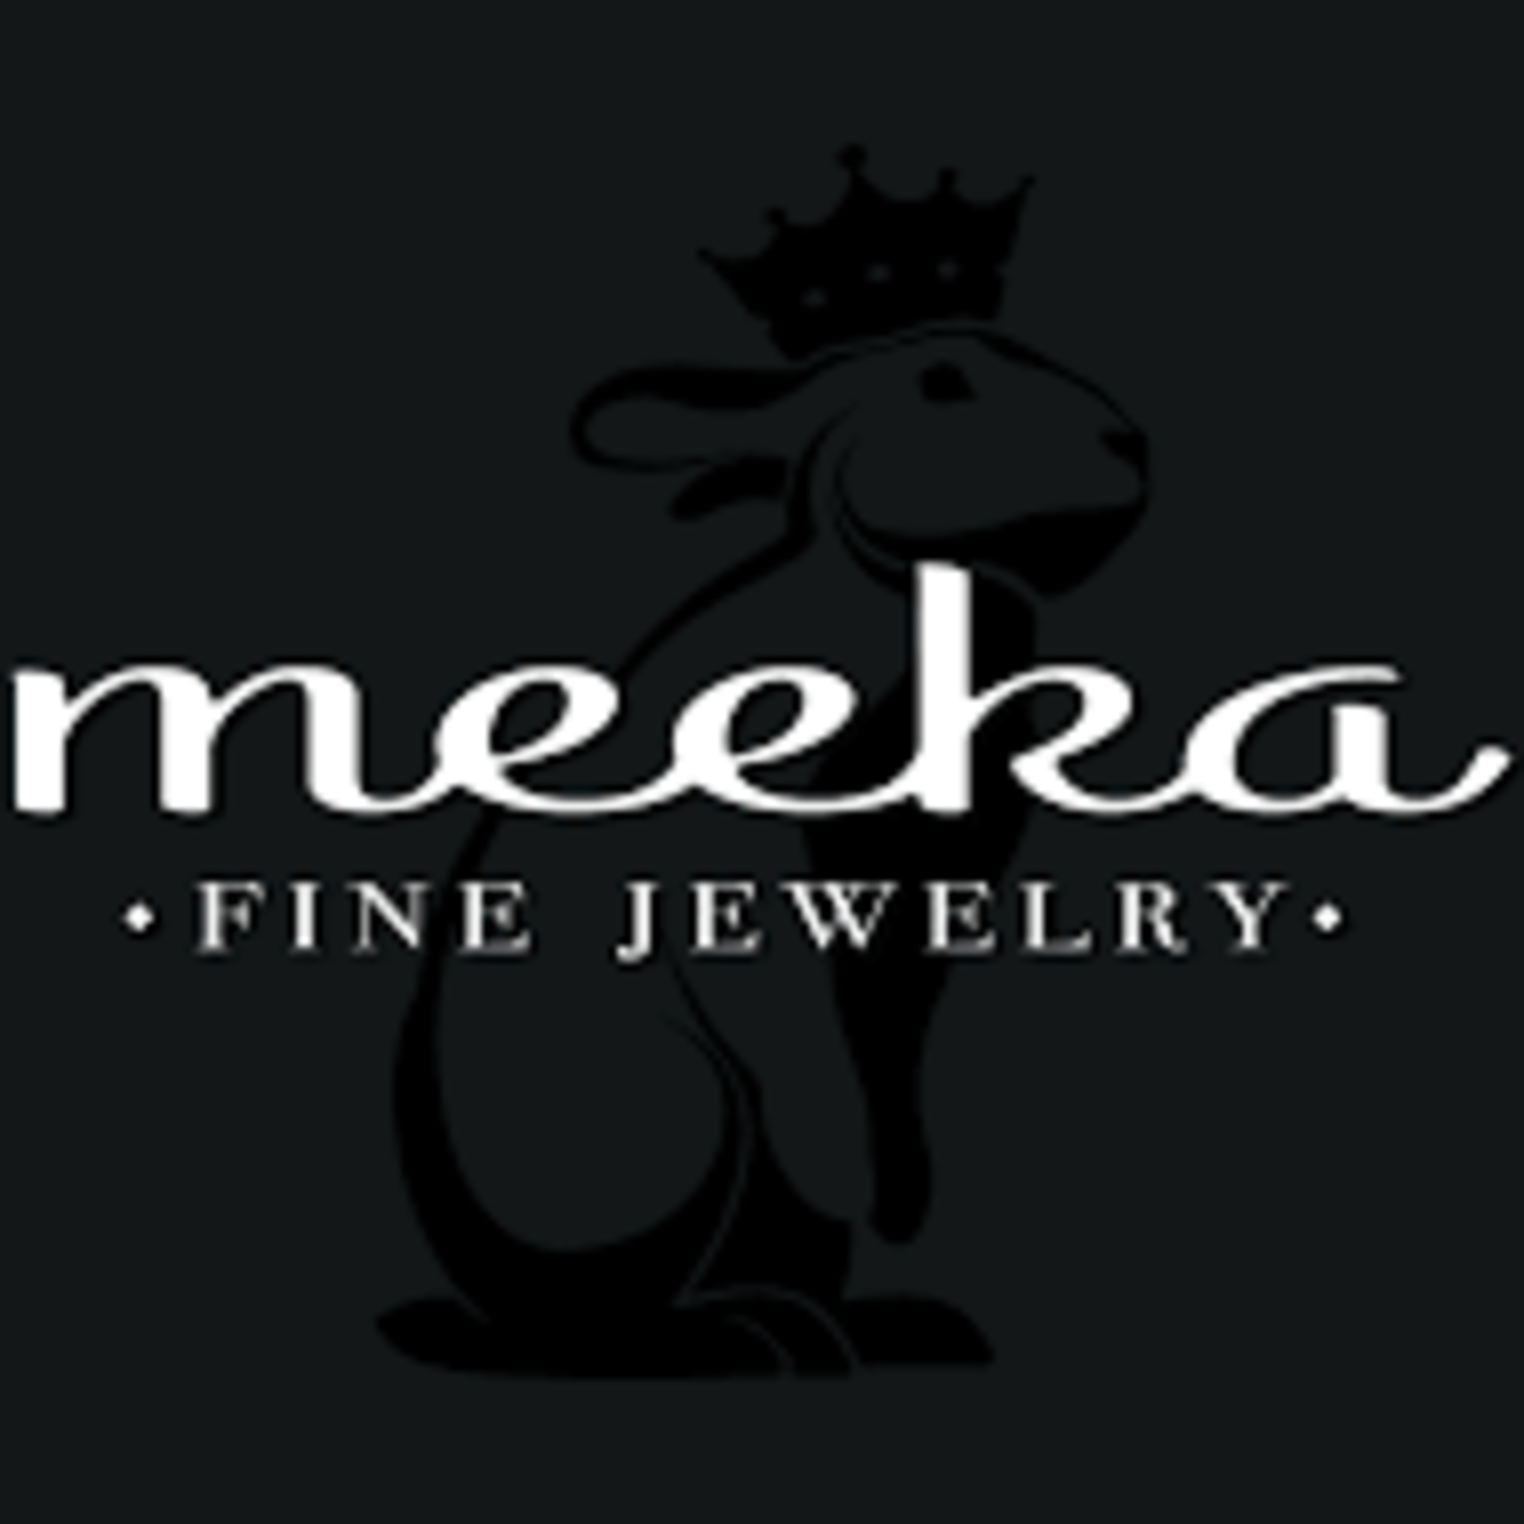 Meeka Fine Jewelry